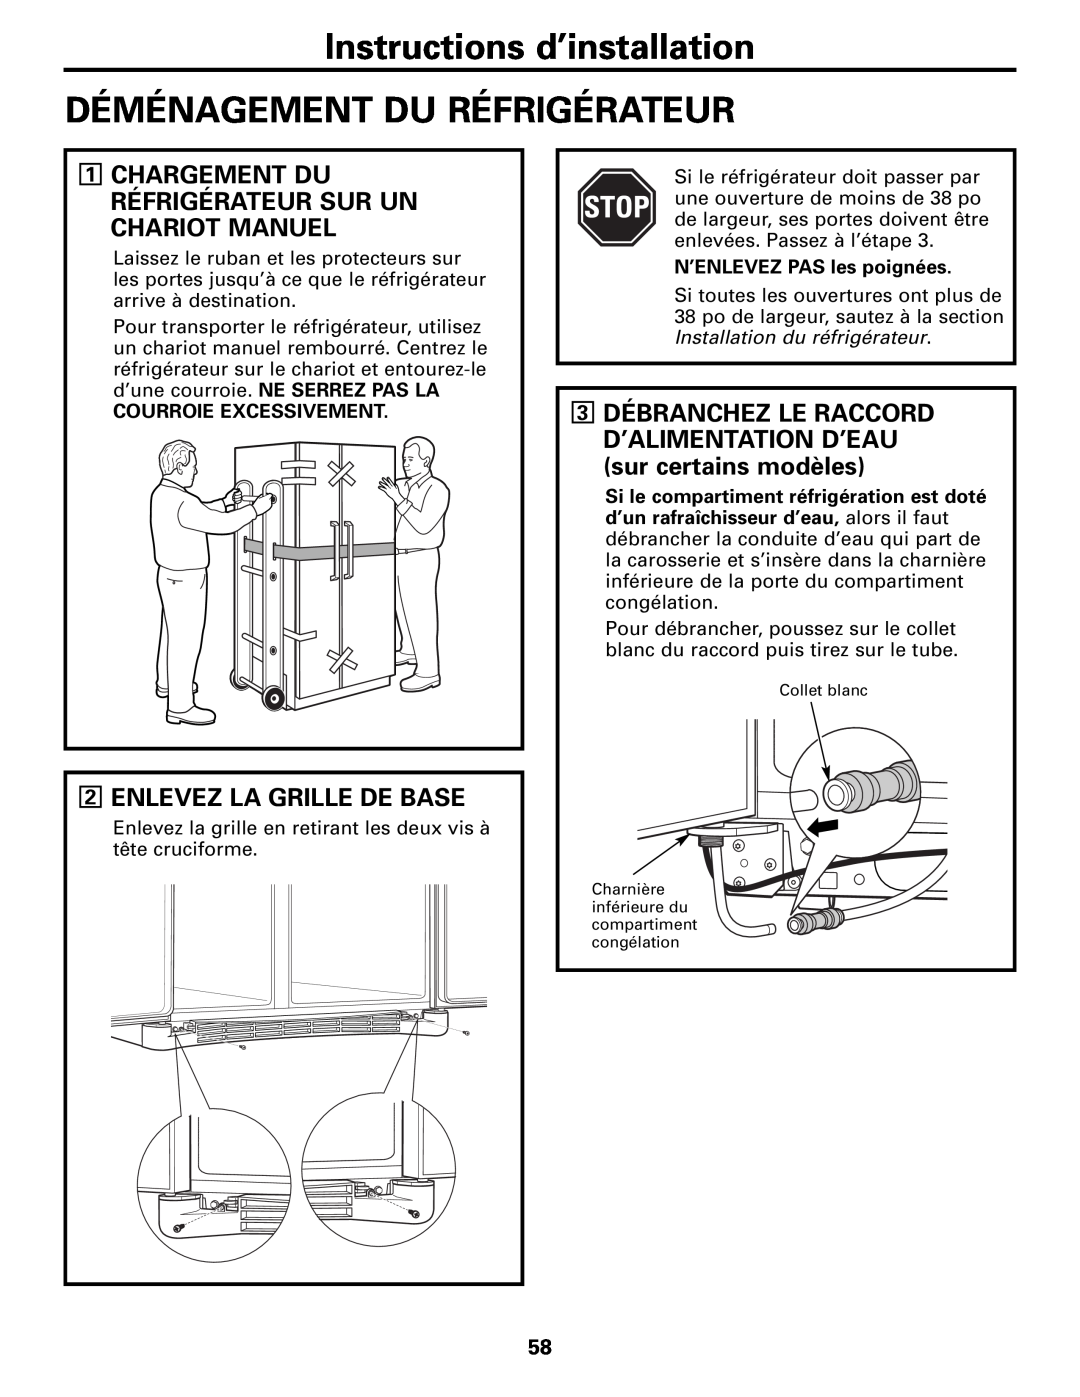 GE MODELS 23 AND 25 Instructions d’installation DÉMÉNAGEMENT DU RÉFRIGÉRATEUR, Enlevez La Grille De Base 